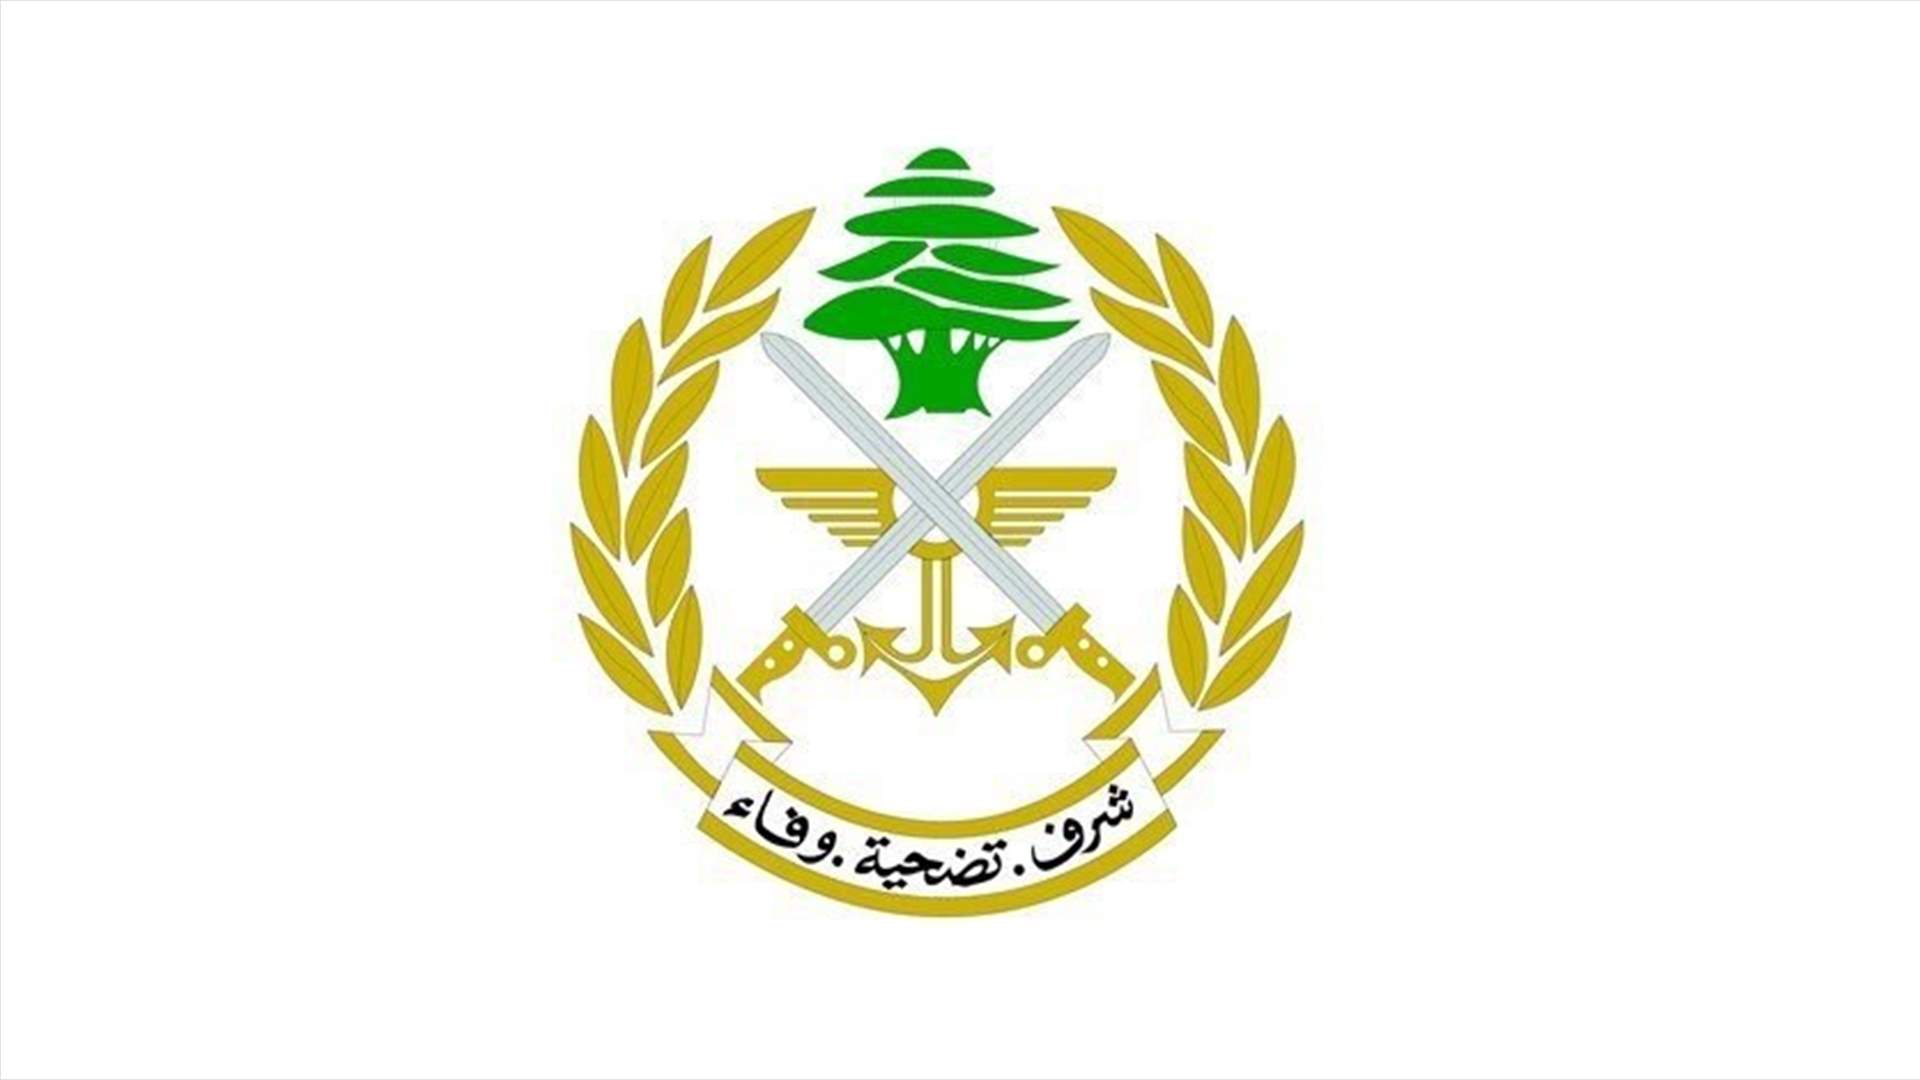 الجيش: توقيف أشخاص قاموا بثقب أنبوب النفط من العراق إلى لبنان وسرقة النفط الخام من داخله